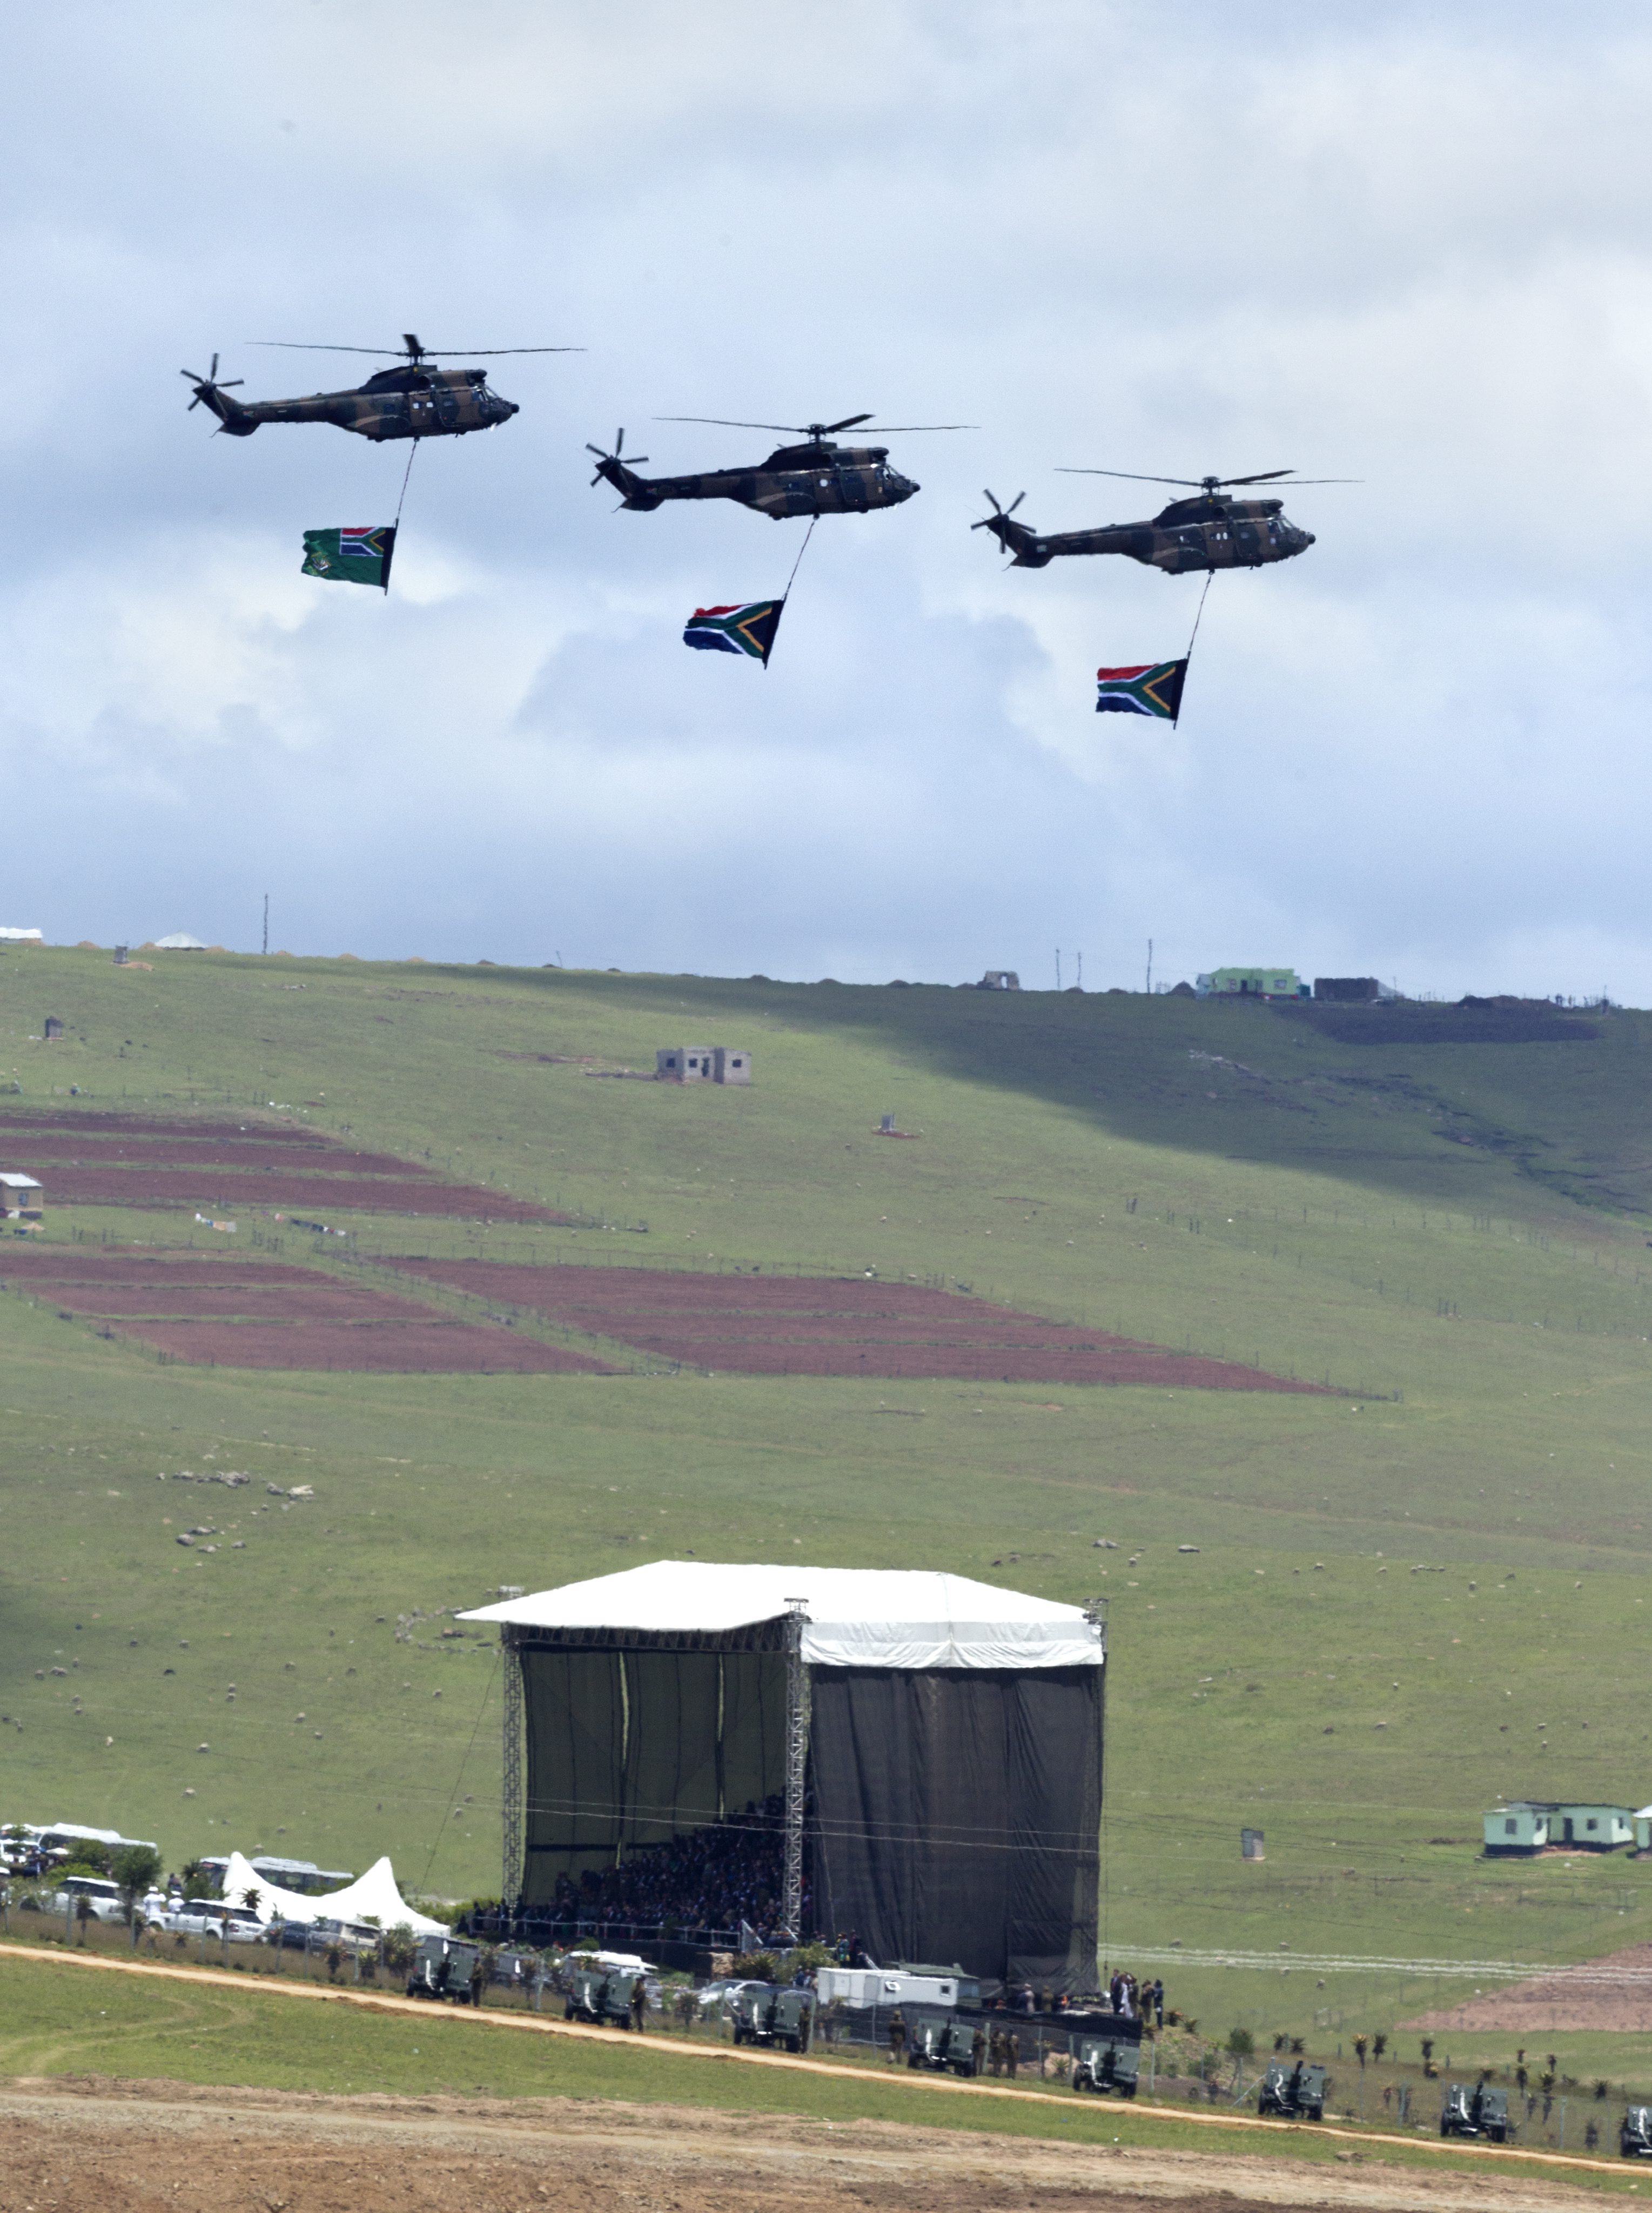 По време на погребението над мястото прелетяха 3 военни хеликоптера с развети национални знамена